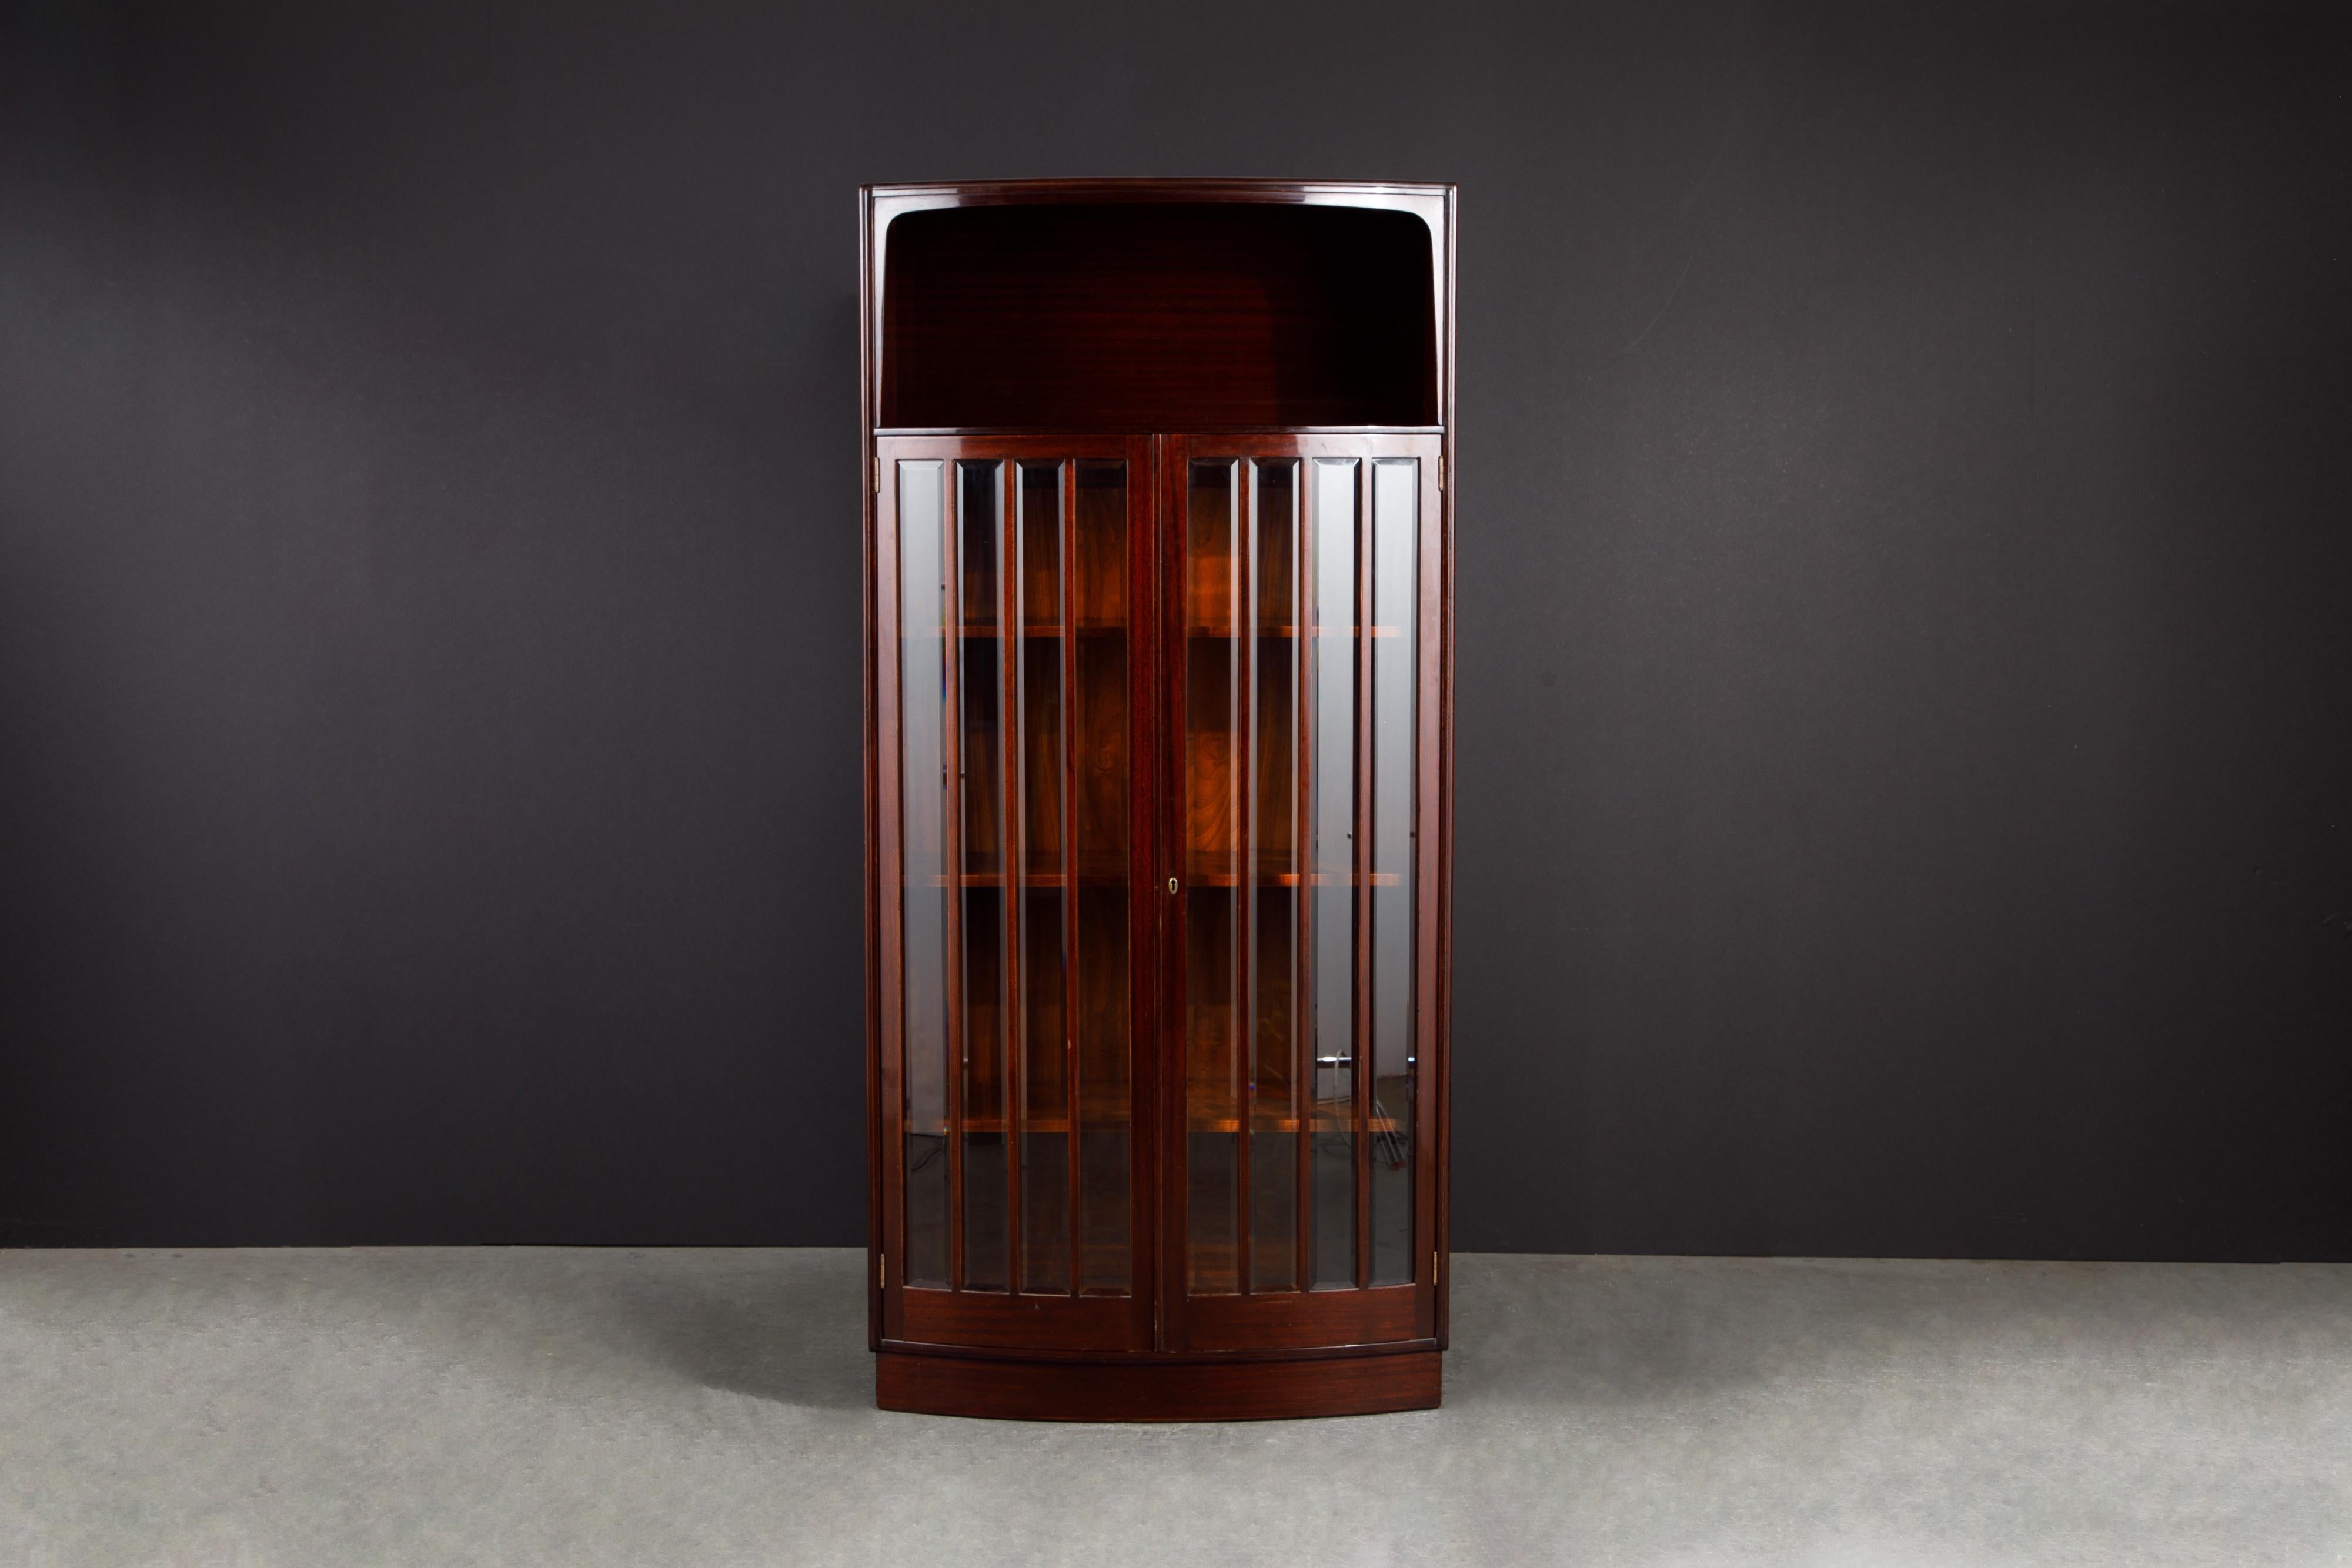 Diese schöne circa 1930 Art-Deco-Vitrine Schrank wurde in wunderschönen tiefbraunem Mahagoni gebaut, mit einer Bugfront Design mit abgeschrägten Glas für Türscheiben und verstellbaren / herausnehmbaren Holzböden. Hochwertige Regalhalterungen an der